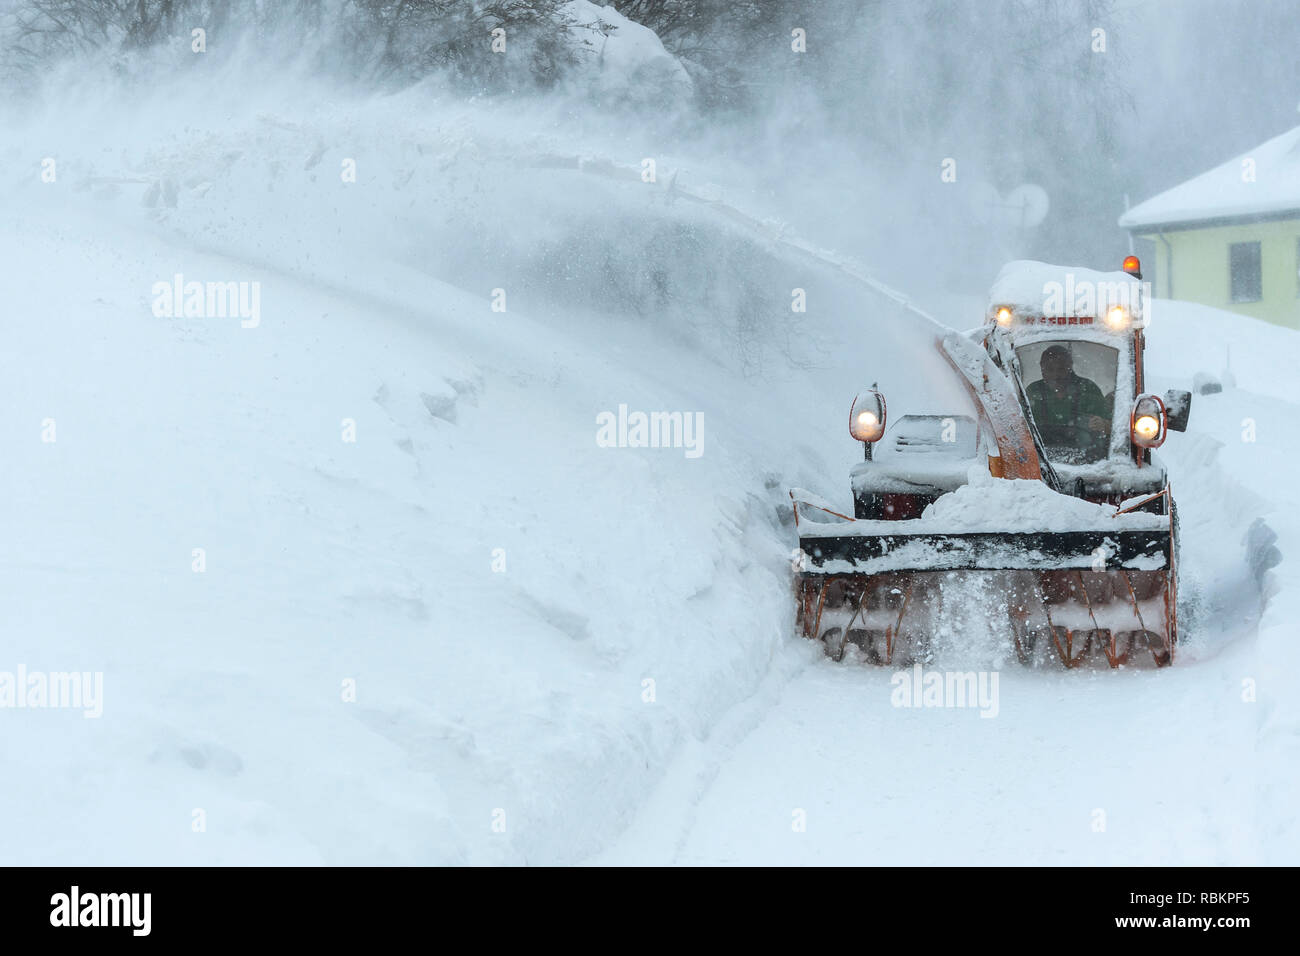 Velka Upa, Monts des Géants. 10 janvier, 2019. Une fraise à neige nettoie une route au cours d'une forte chute de neige dans la région de Velka Upa, Monts des Géants, République tchèque, jeudi, 10 janvier 2019. Photo : CTK/Tanecek Photo/Alamy Live News Banque D'Images